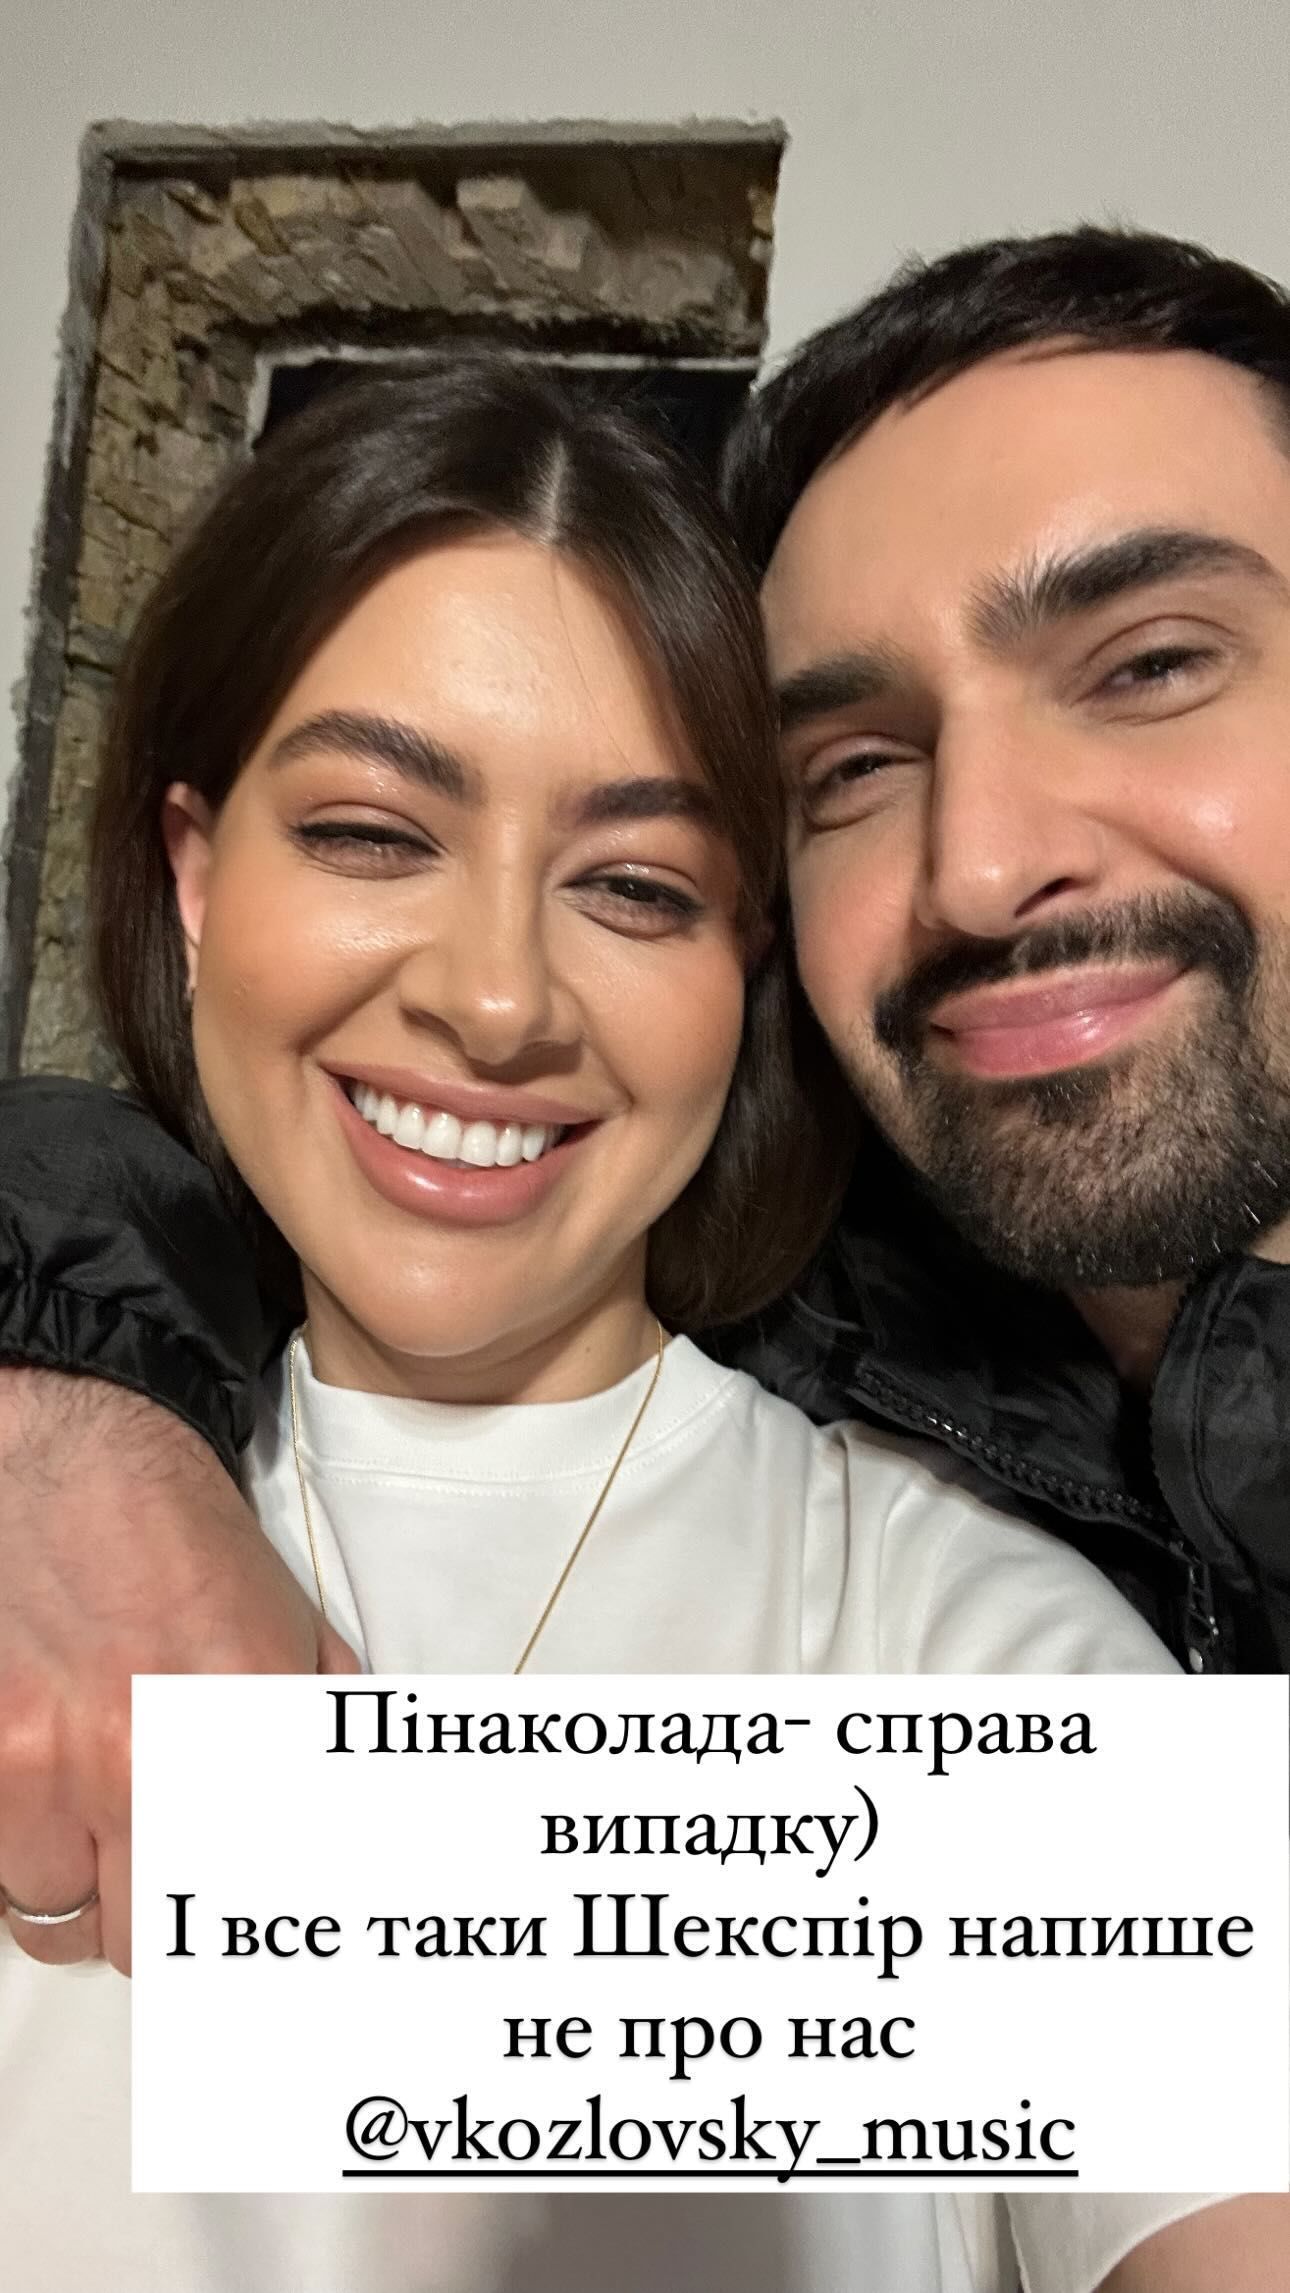 "Екс-дружина" Раміна Есхакзай привітала Віталія Козловського з батьківством. Фото з Instagram @raminalalala